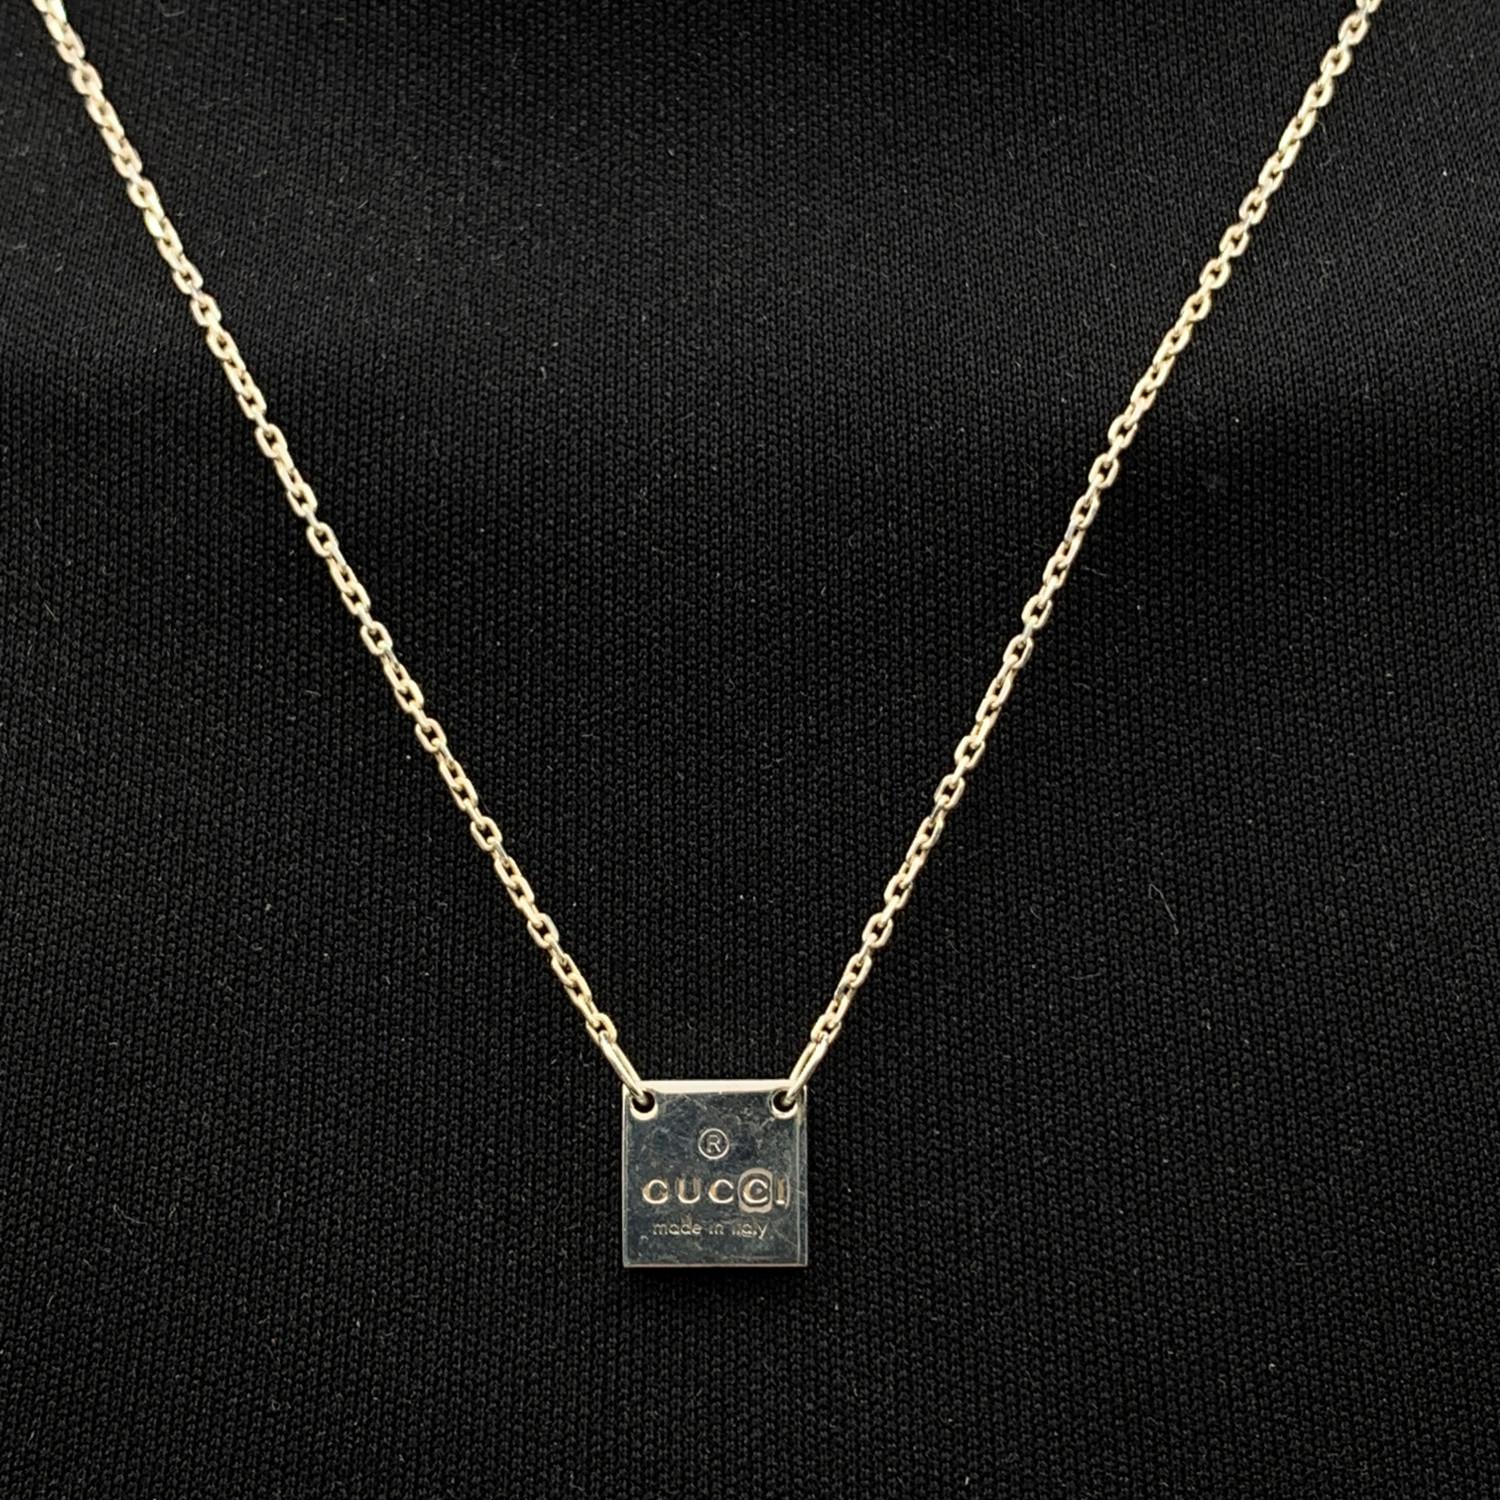 gucci silver square pendant necklace